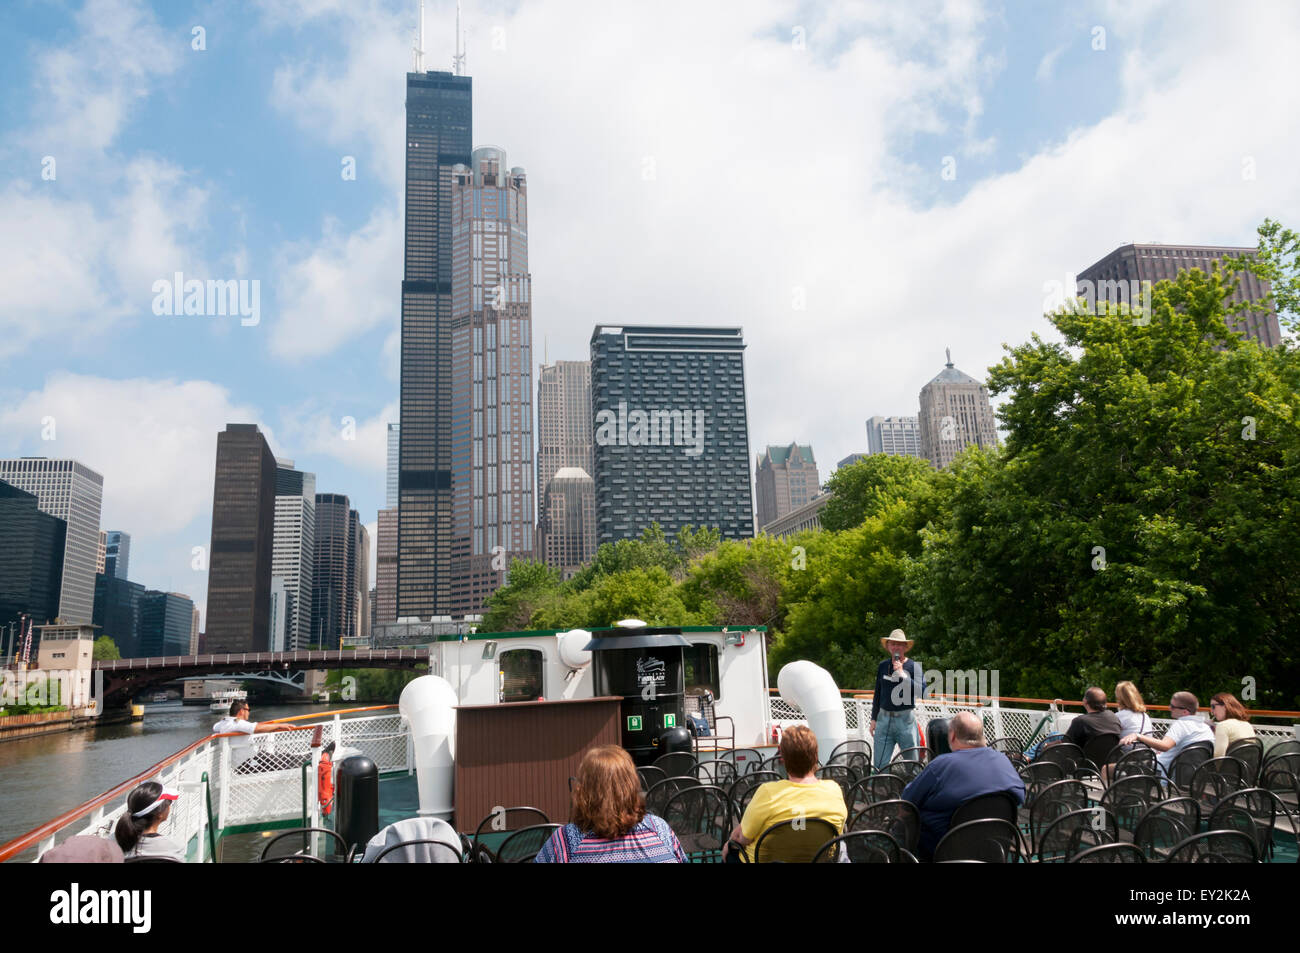 Les touristes sur une fondation de l'Architecture de Chicago River croisière sur la rivière Chicago en face de la Willis Tower. Banque D'Images